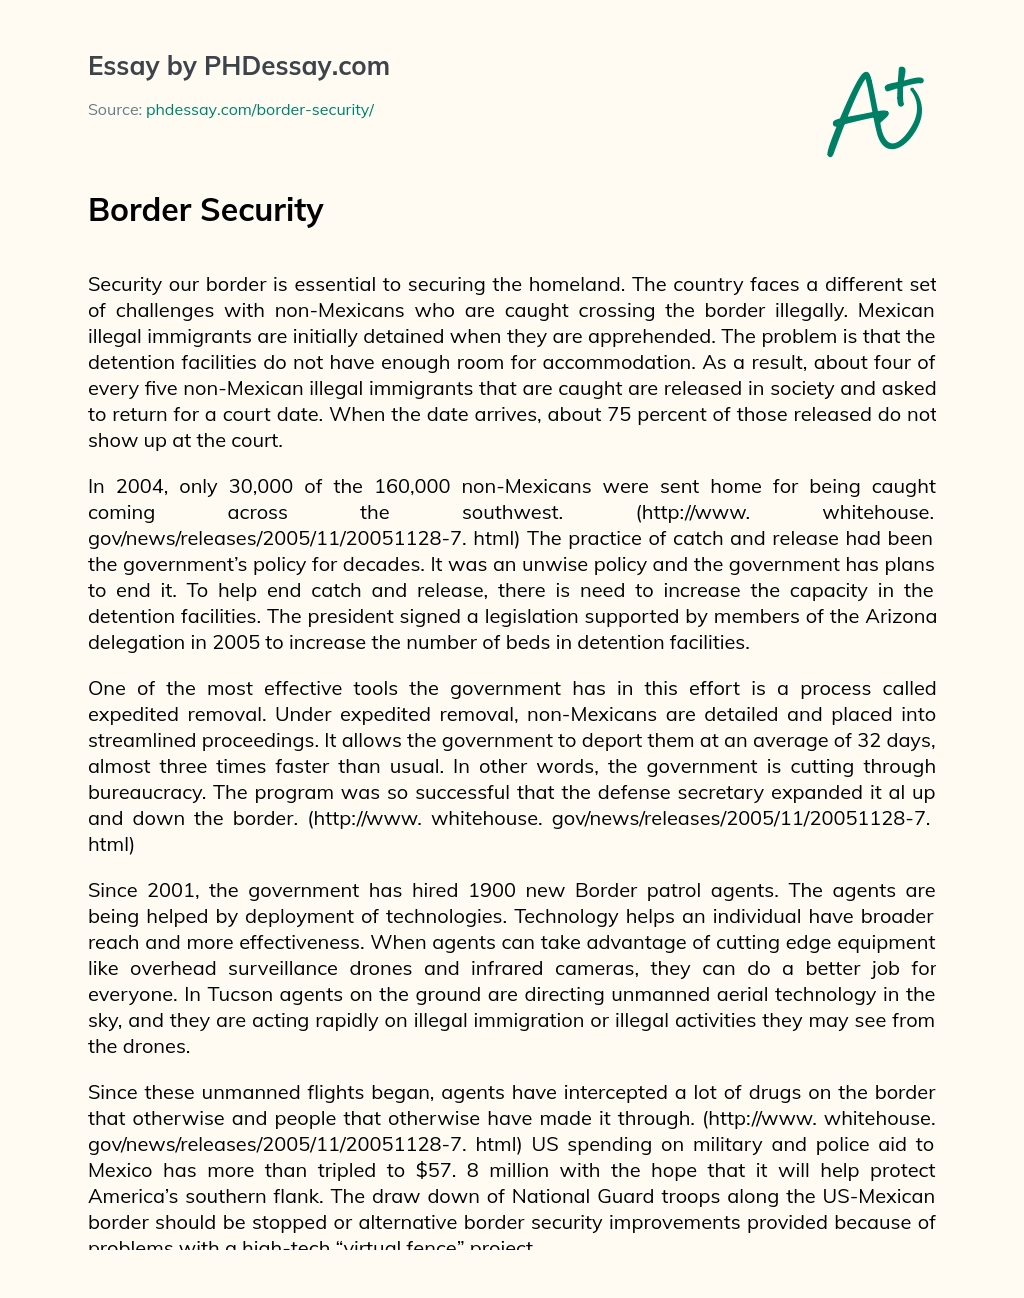 Border Security essay